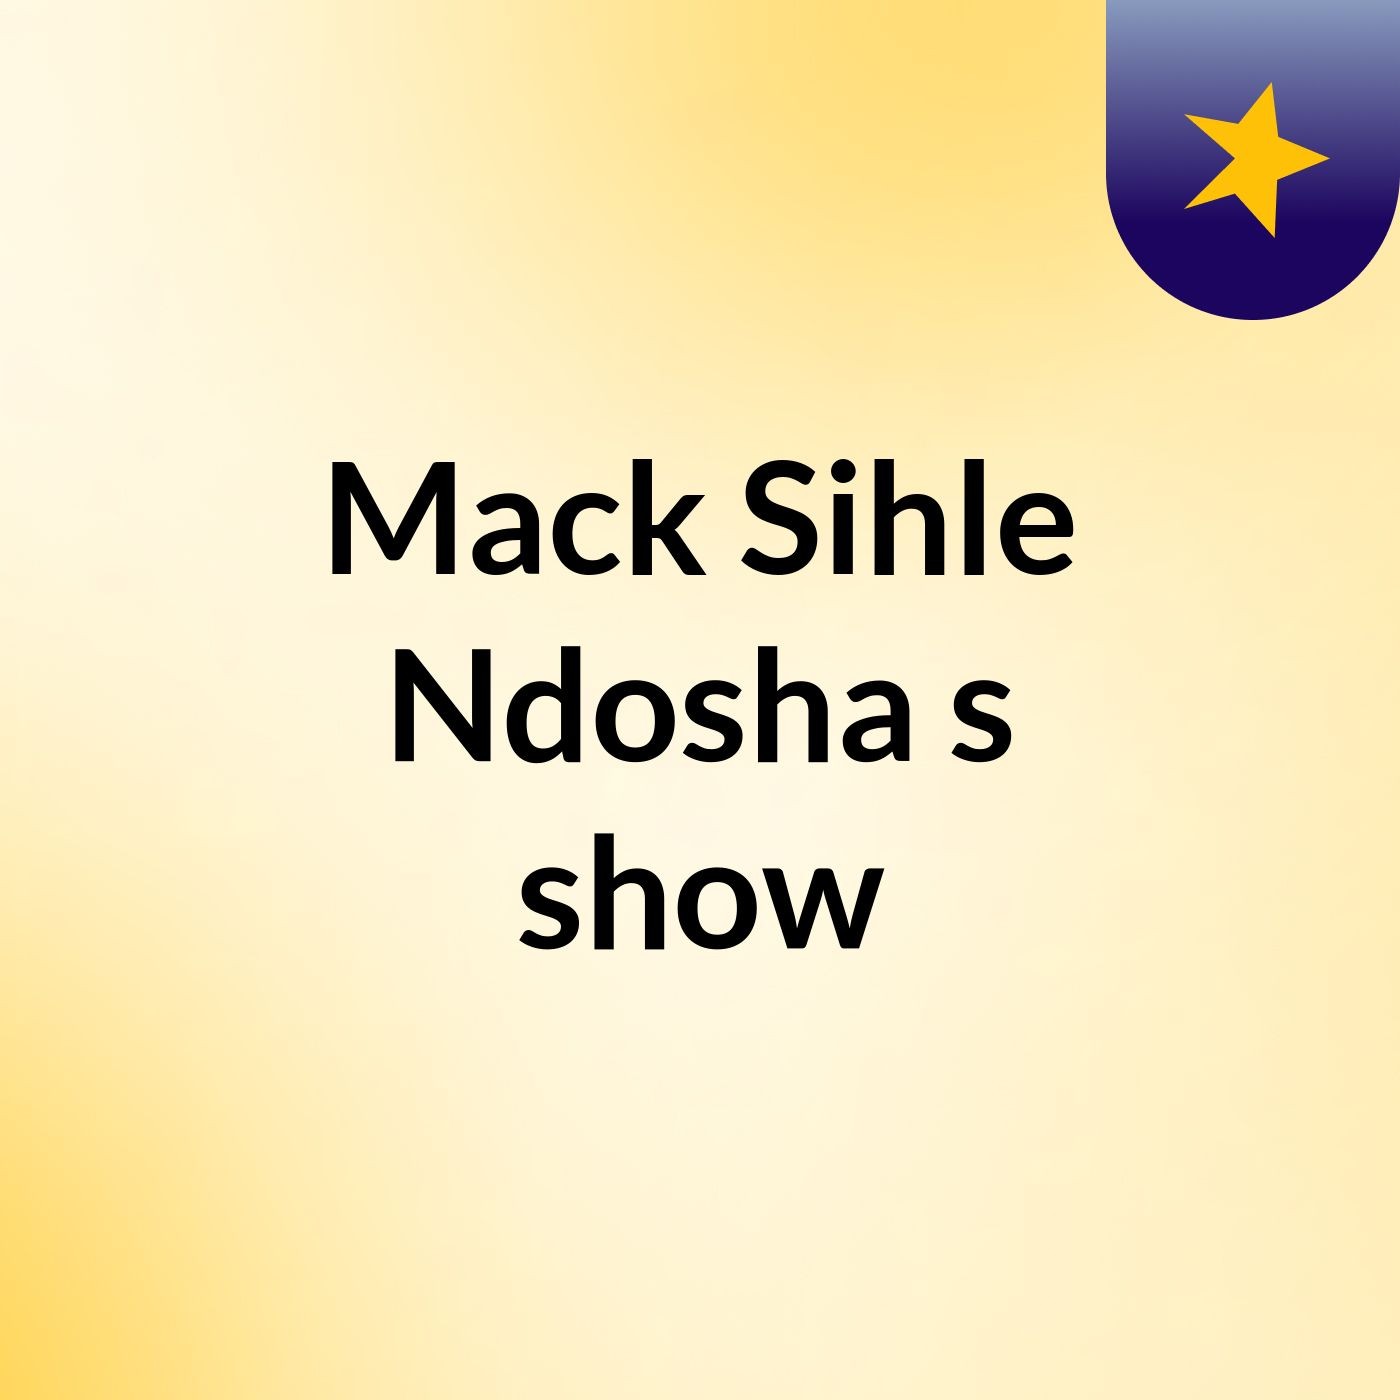 Mack Sihle Ndosha's show